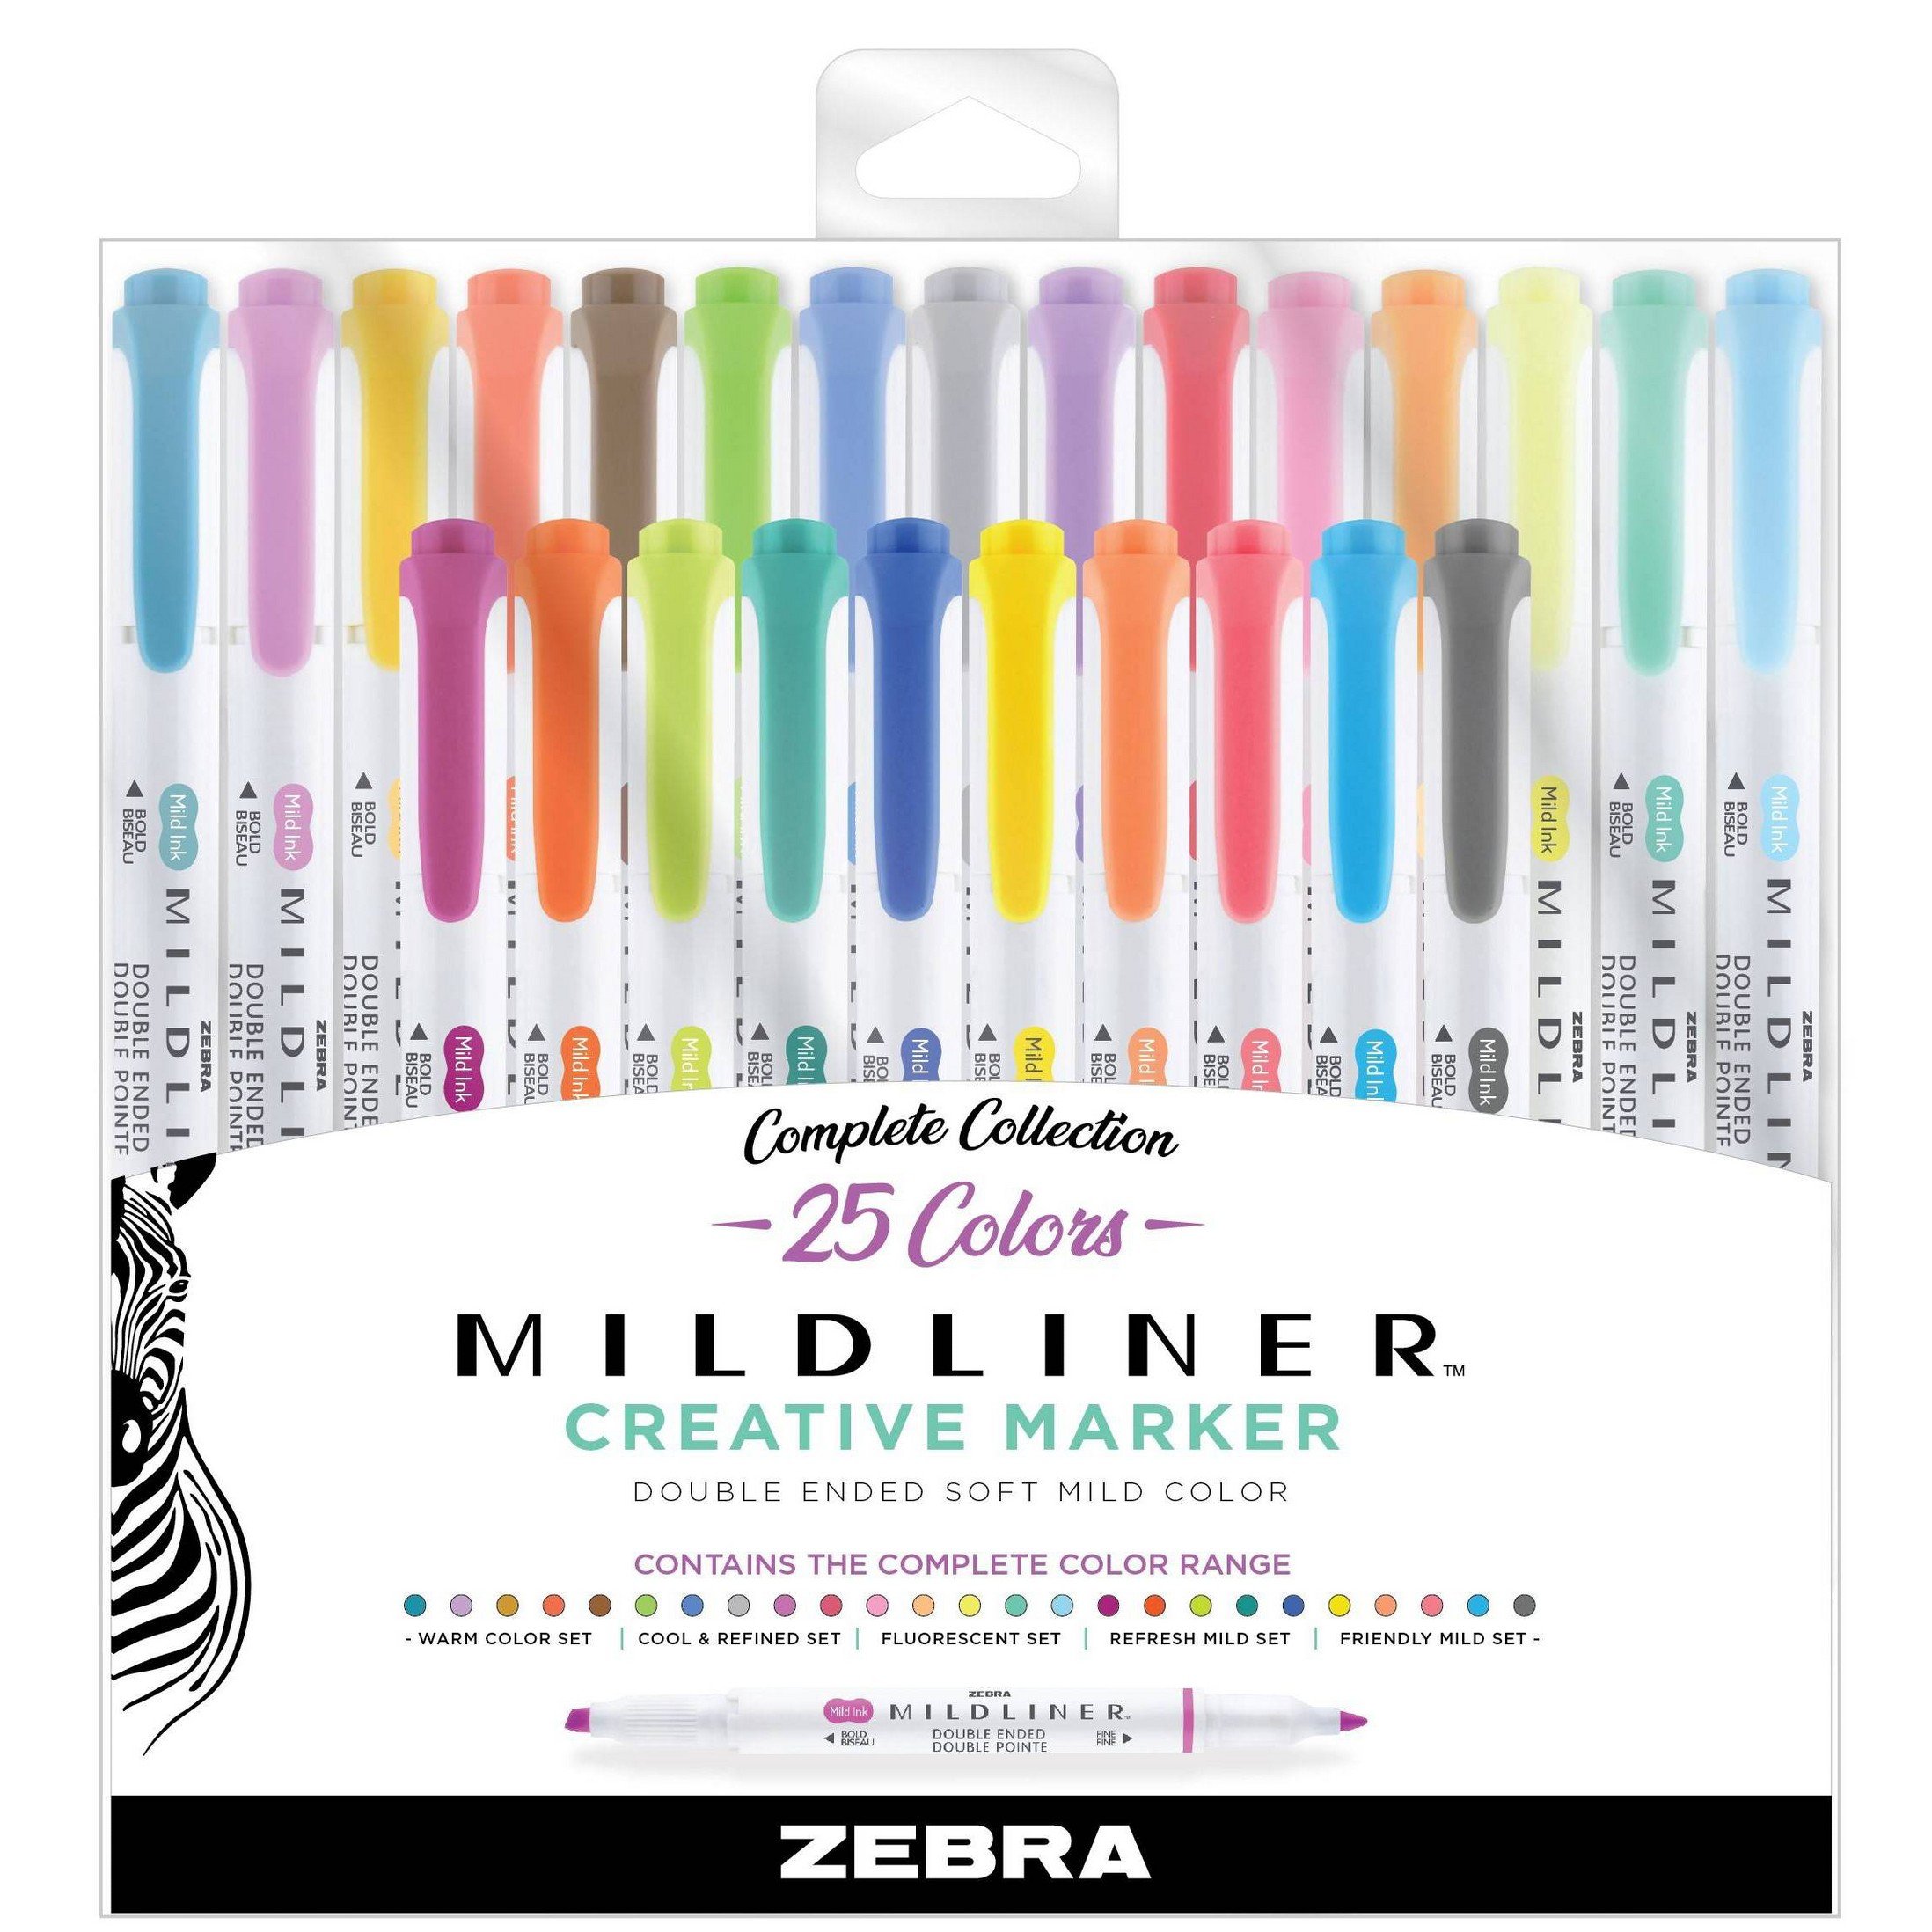 Zebra Mildliner Brush Pen 5 Set Refresh